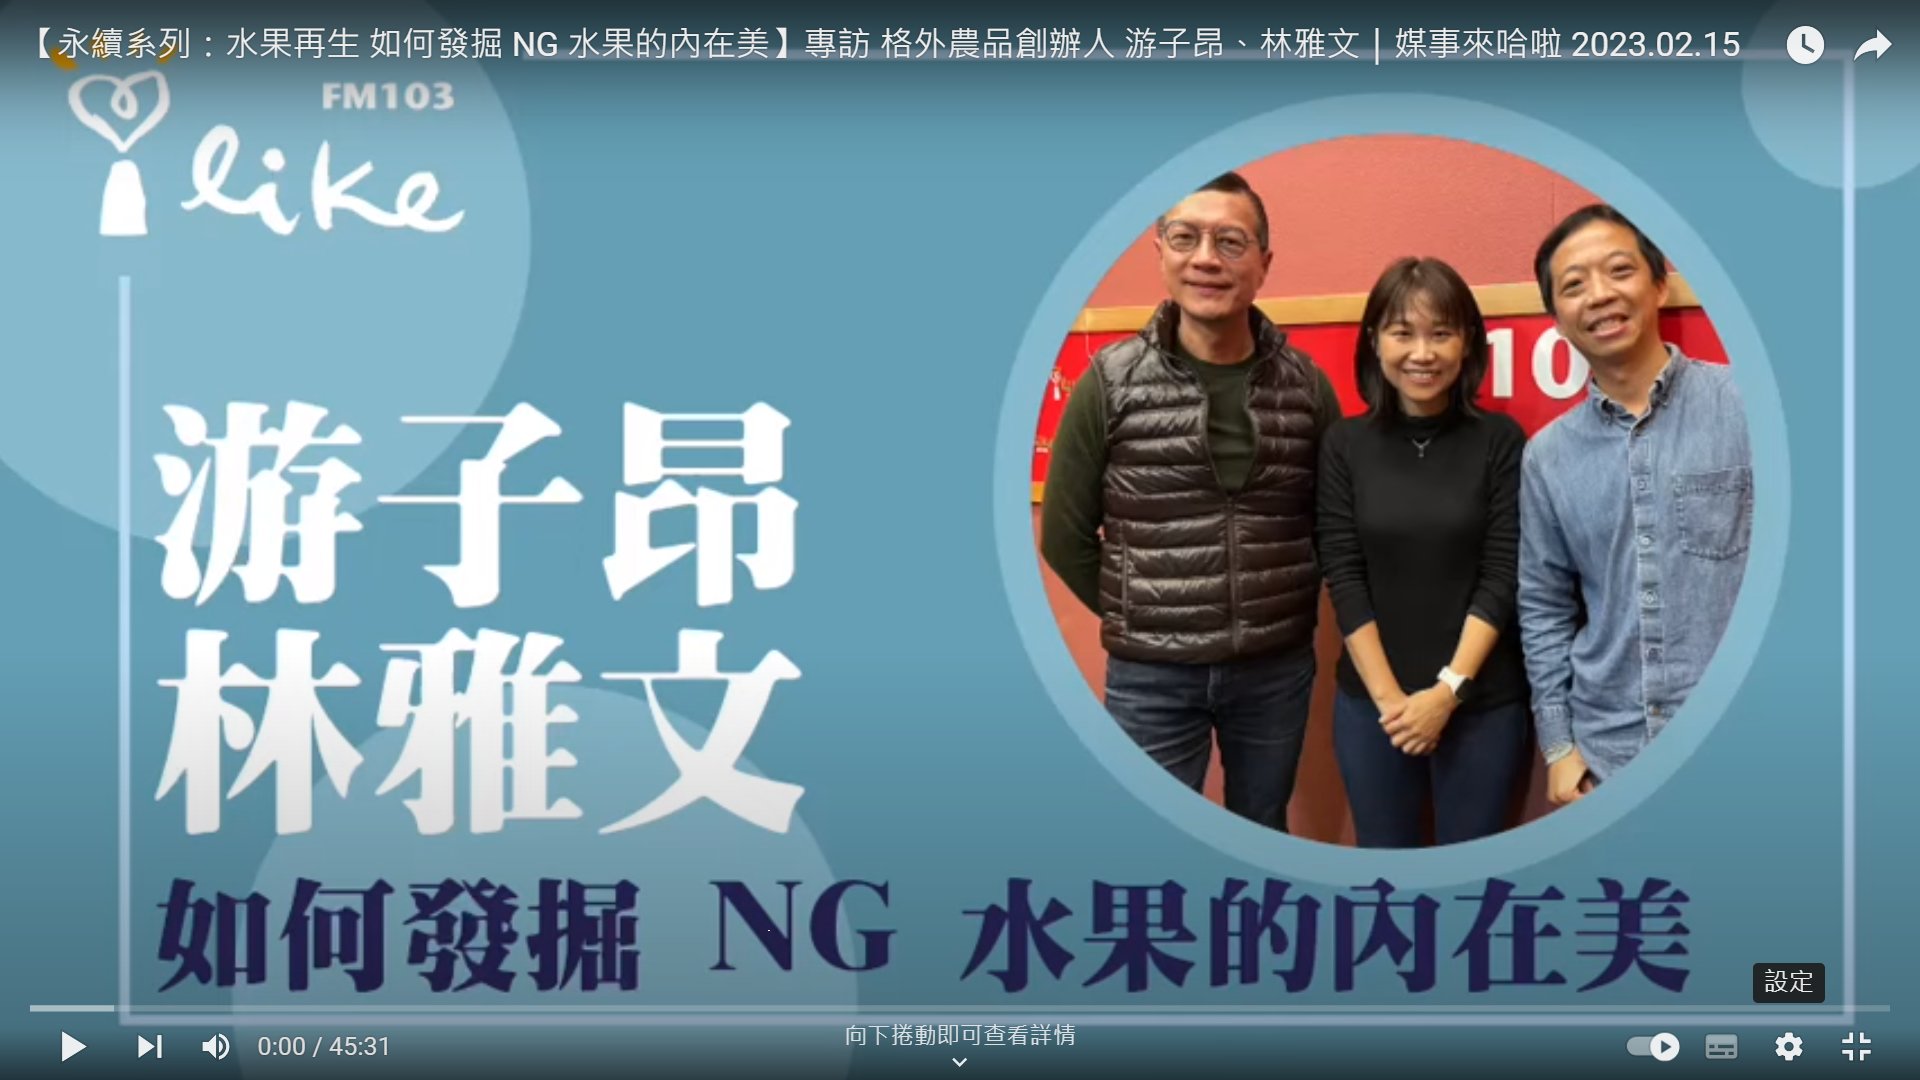 中廣流行網-媒事來哈啦節目接受主持人 吳若權 專訪